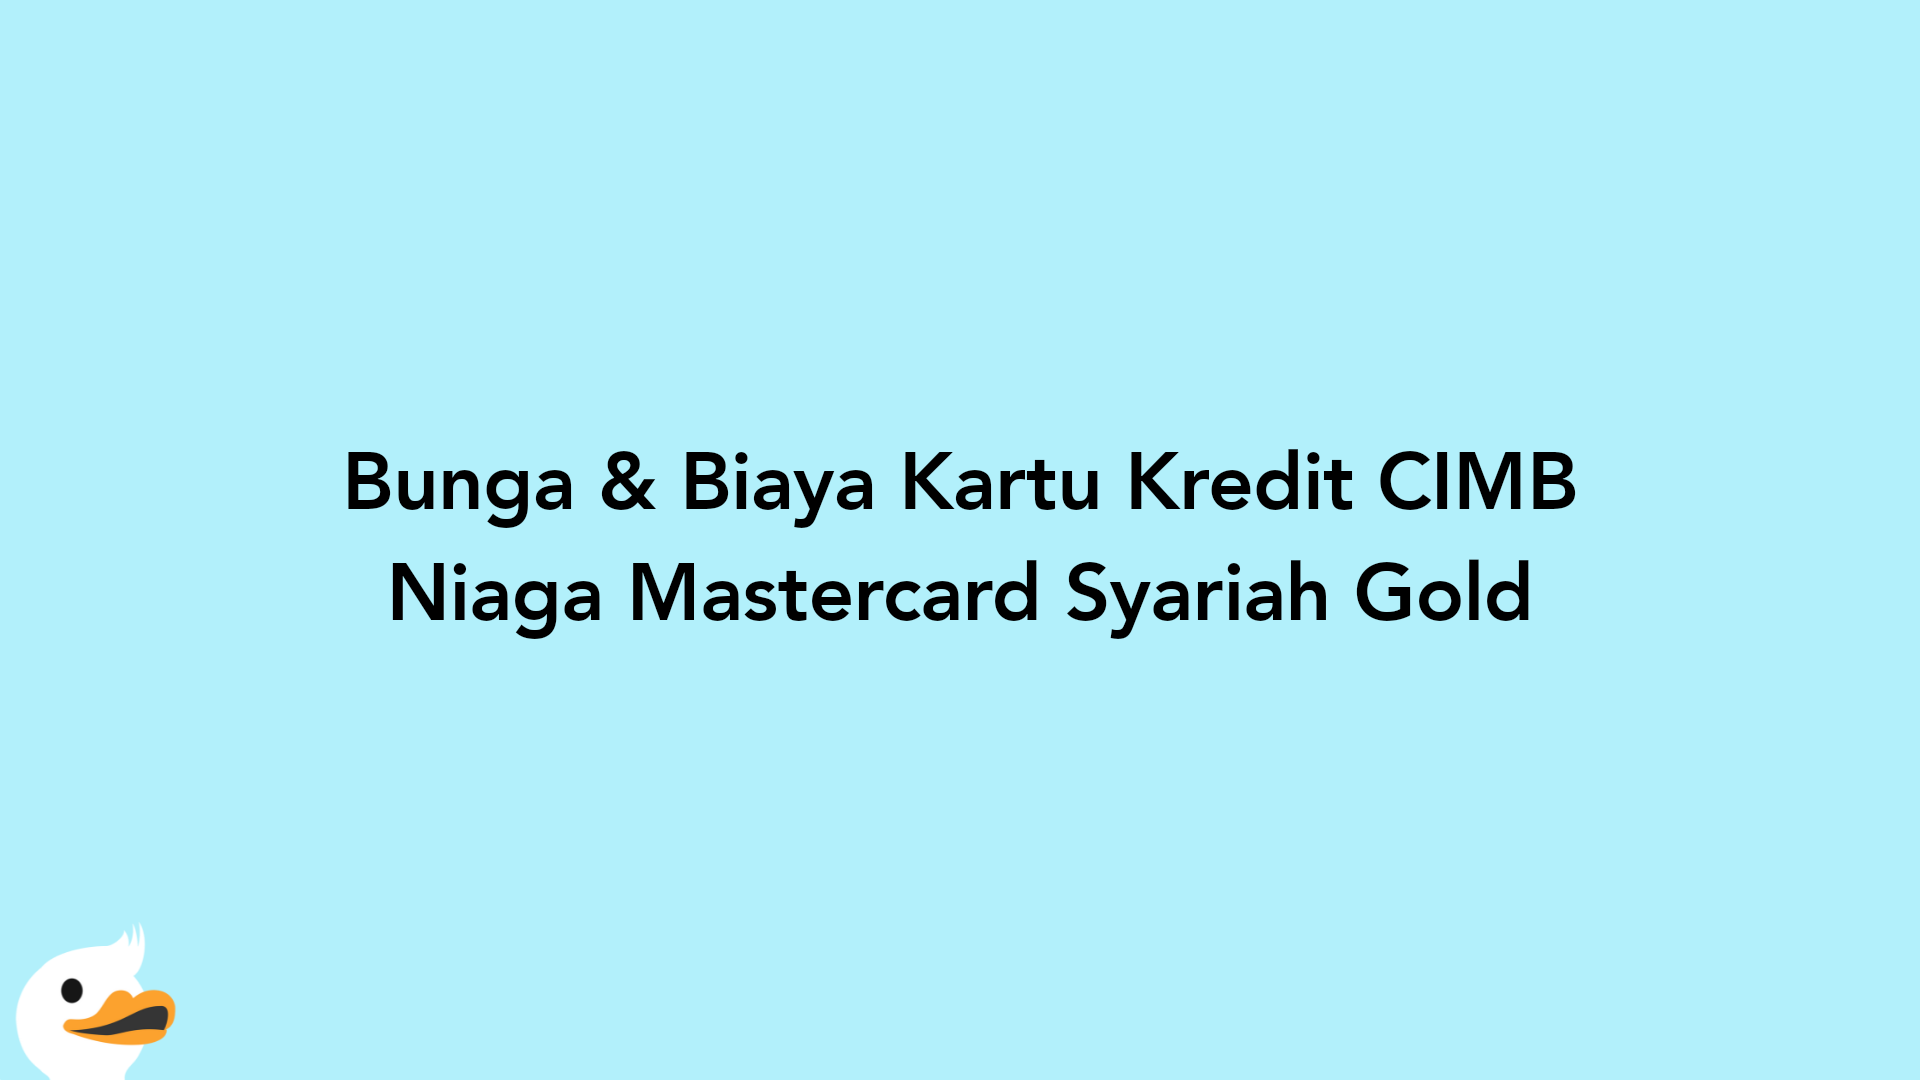 Bunga & Biaya Kartu Kredit CIMB Niaga Mastercard Syariah Gold